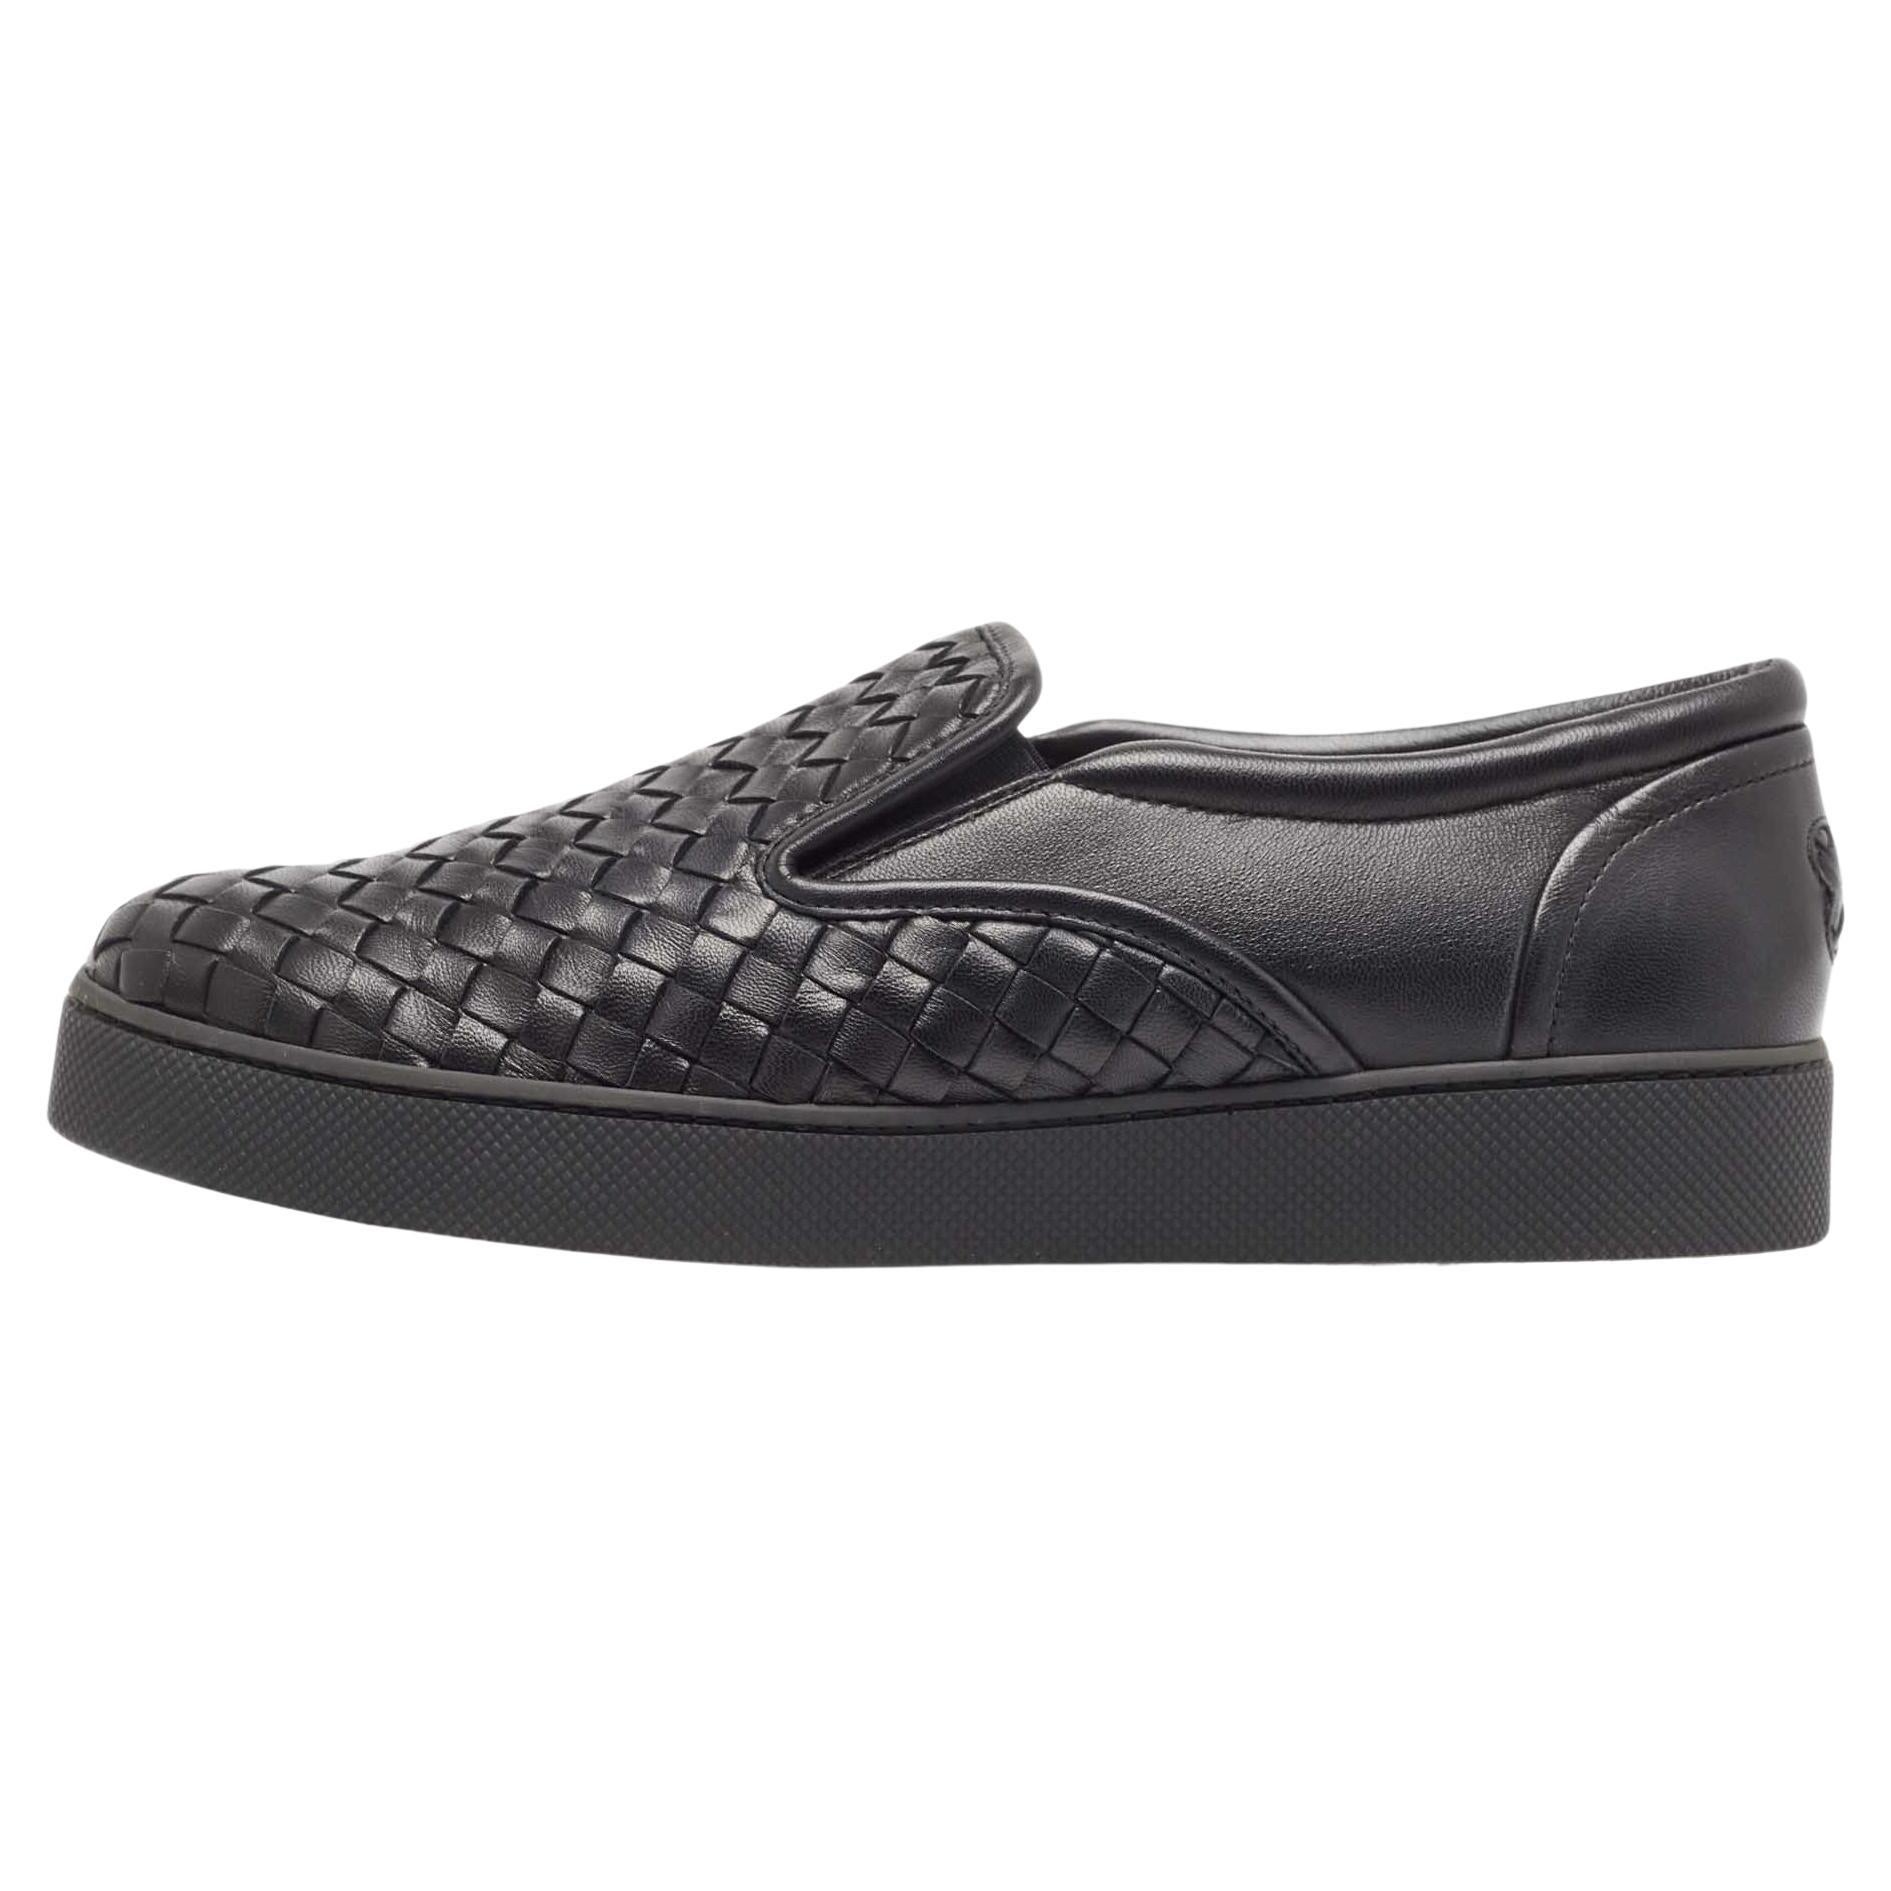 Bottega Veneta Black Intrecciato Leather Slip On Sneakers Size 40